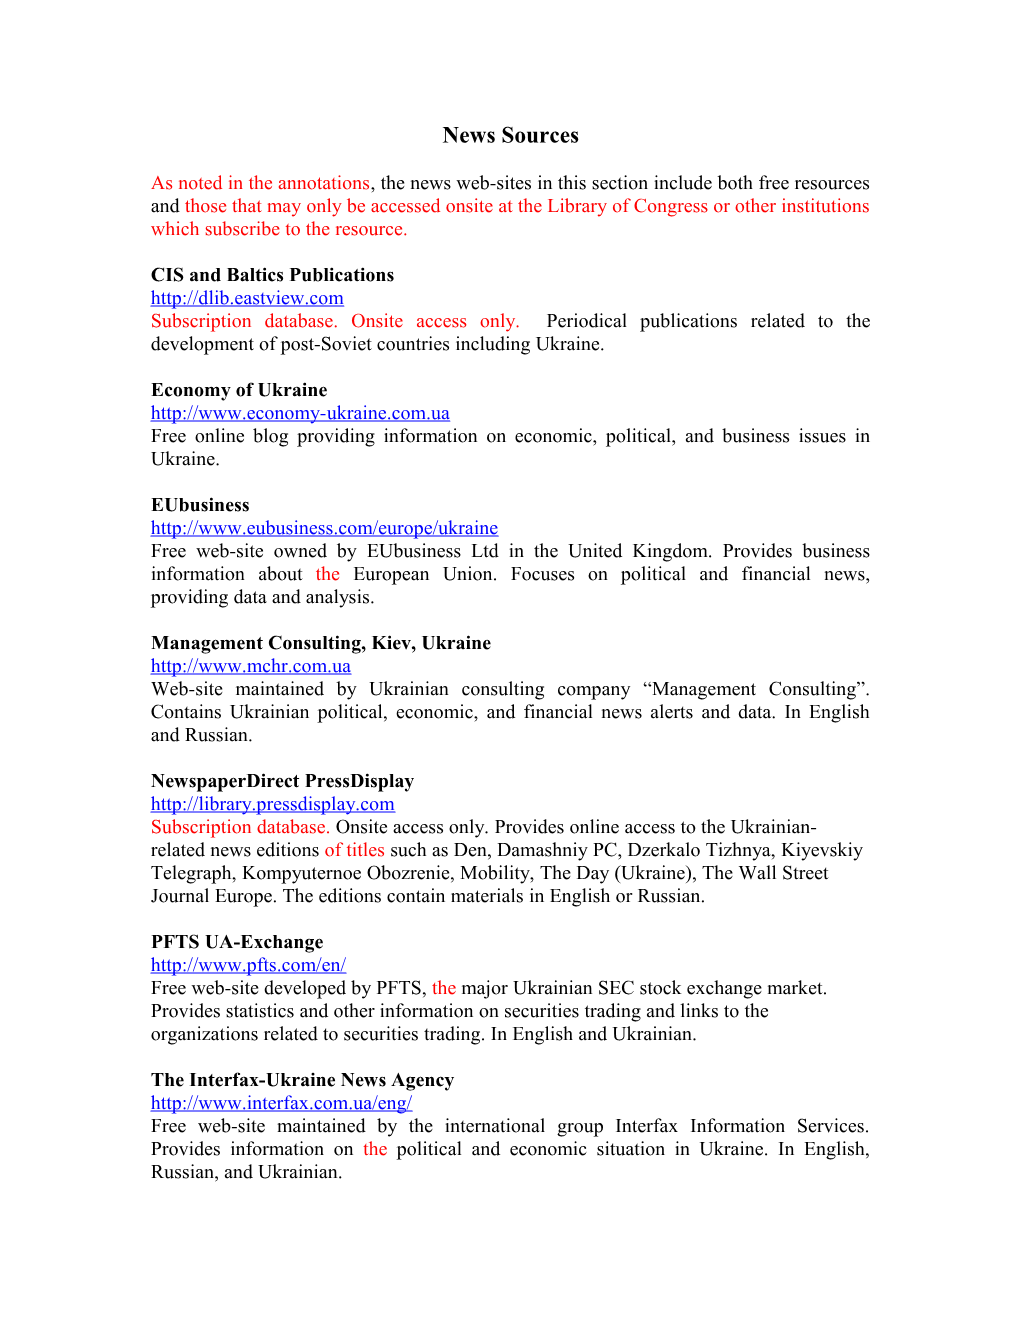 CIS and Baltics Publications